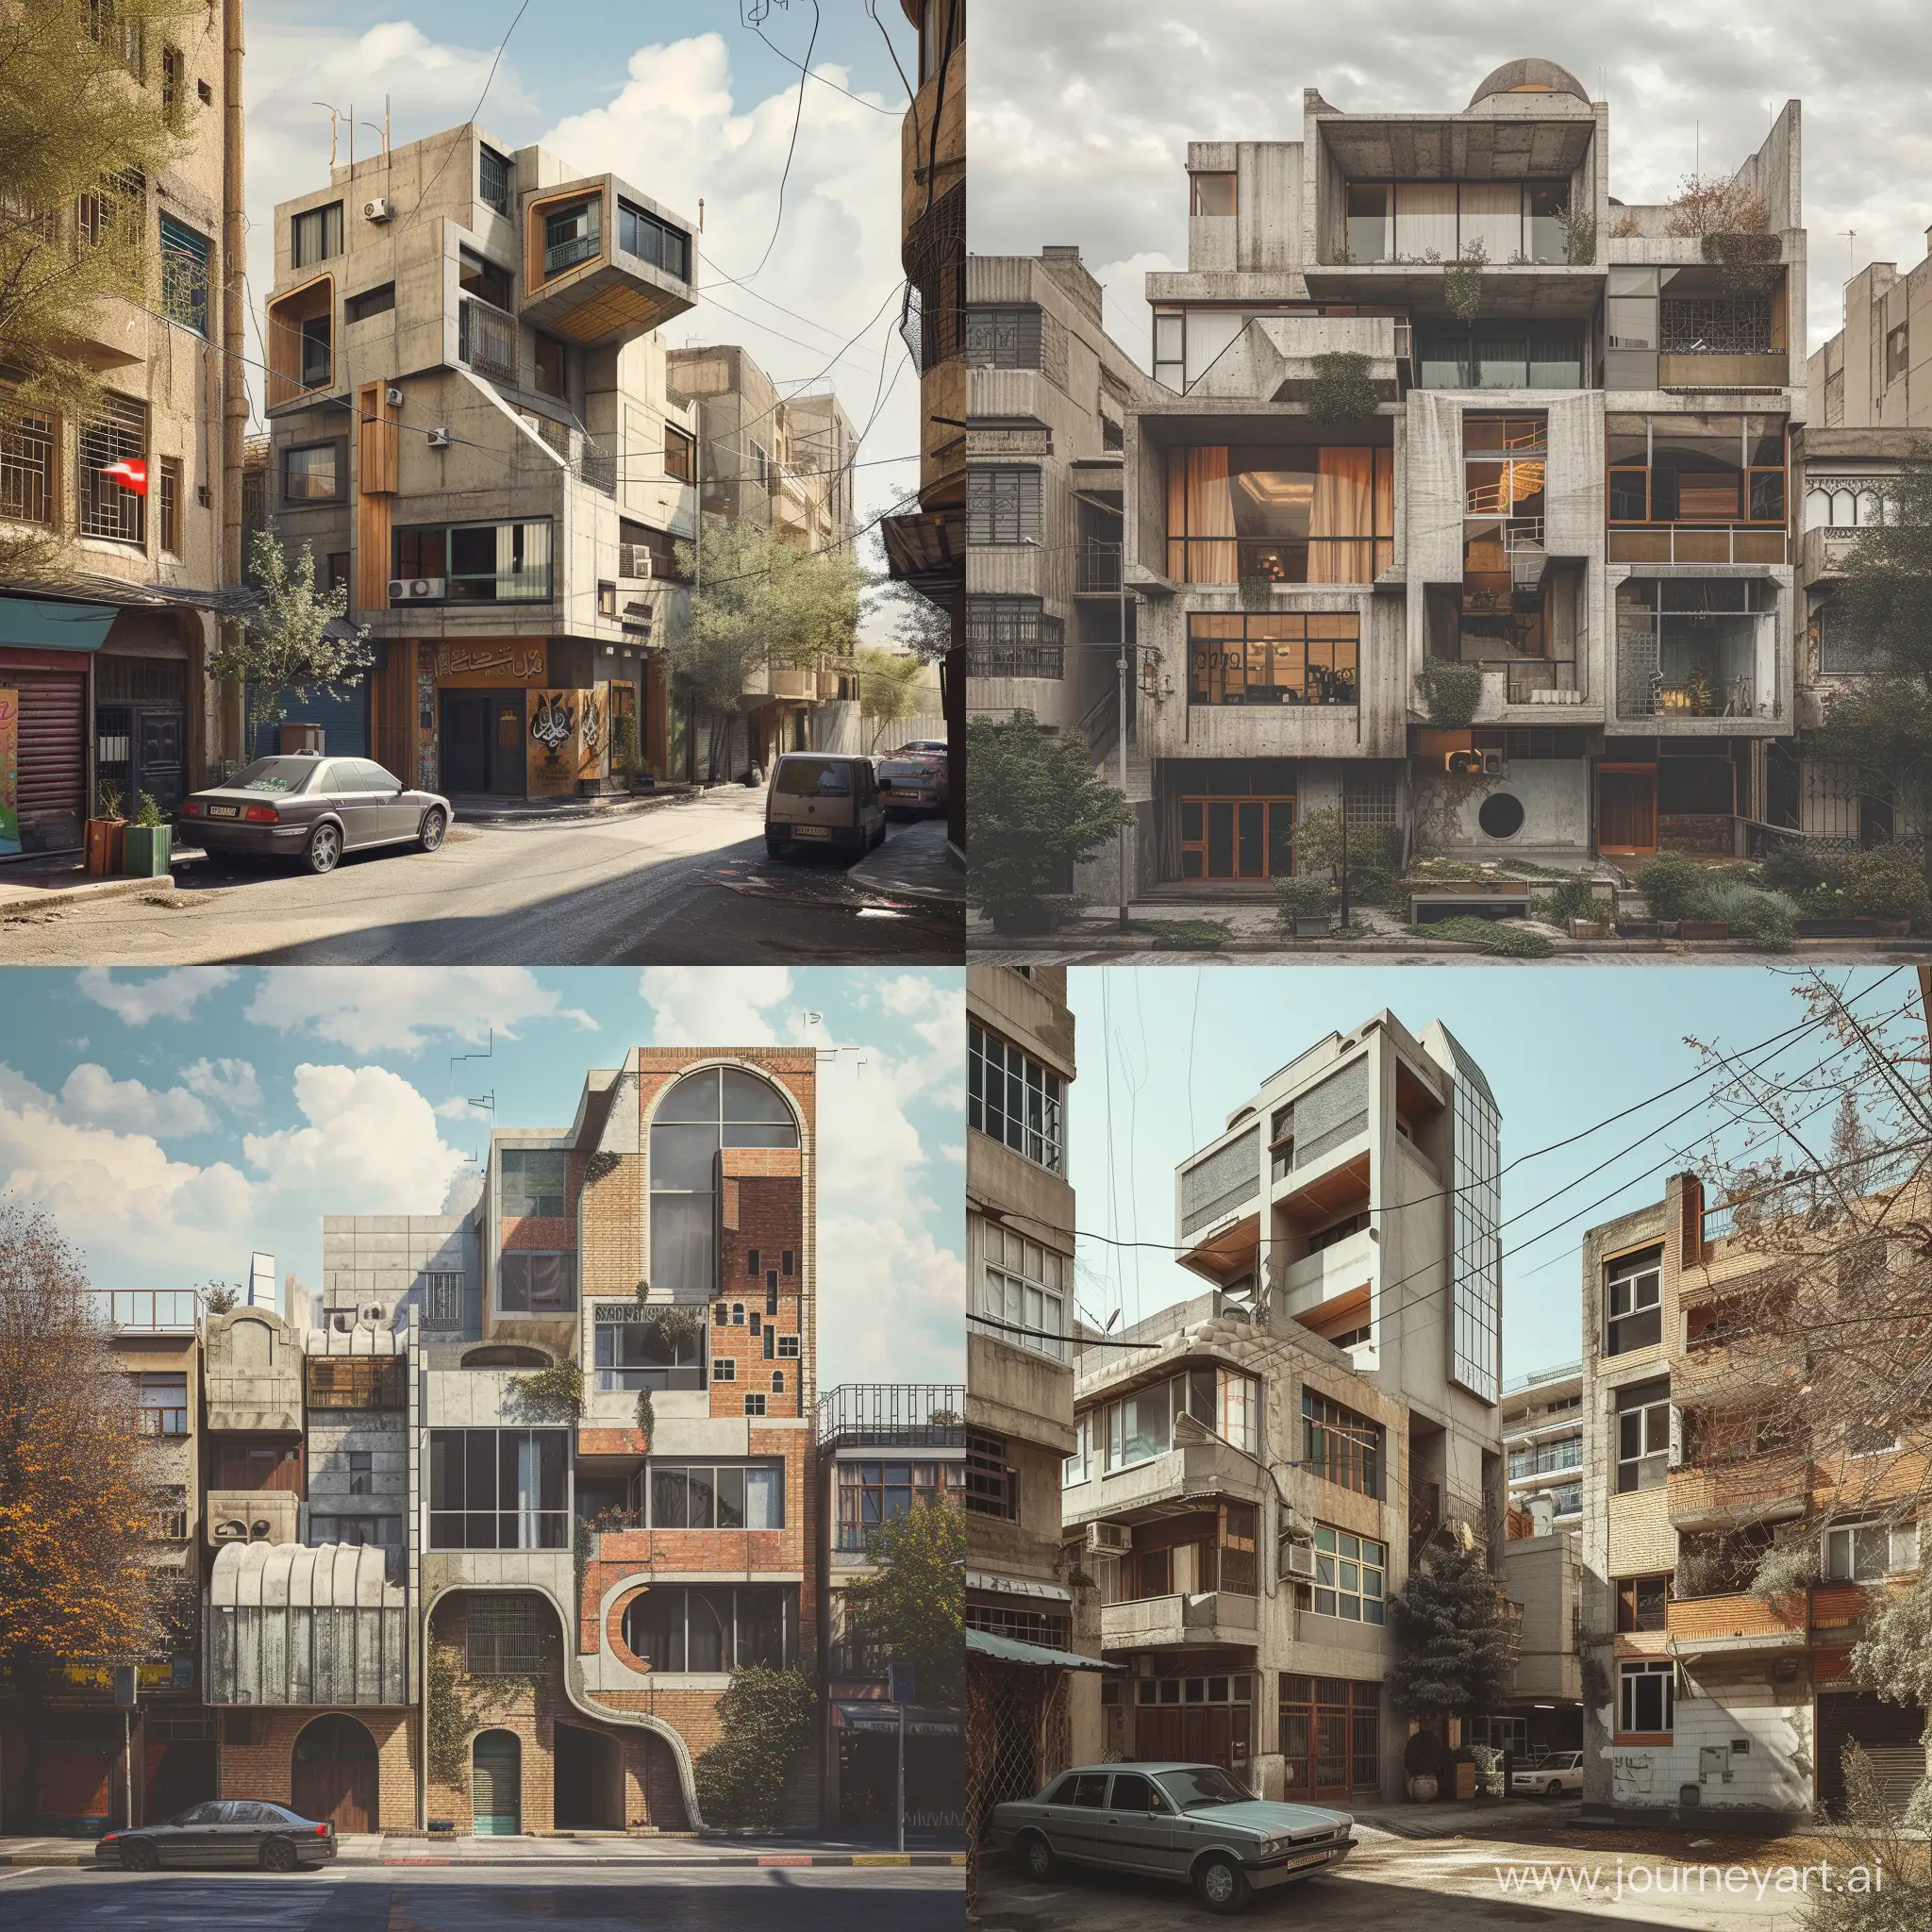 Futuristic-and-Islamic-Collage-Architecture-in-Urban-Tehran